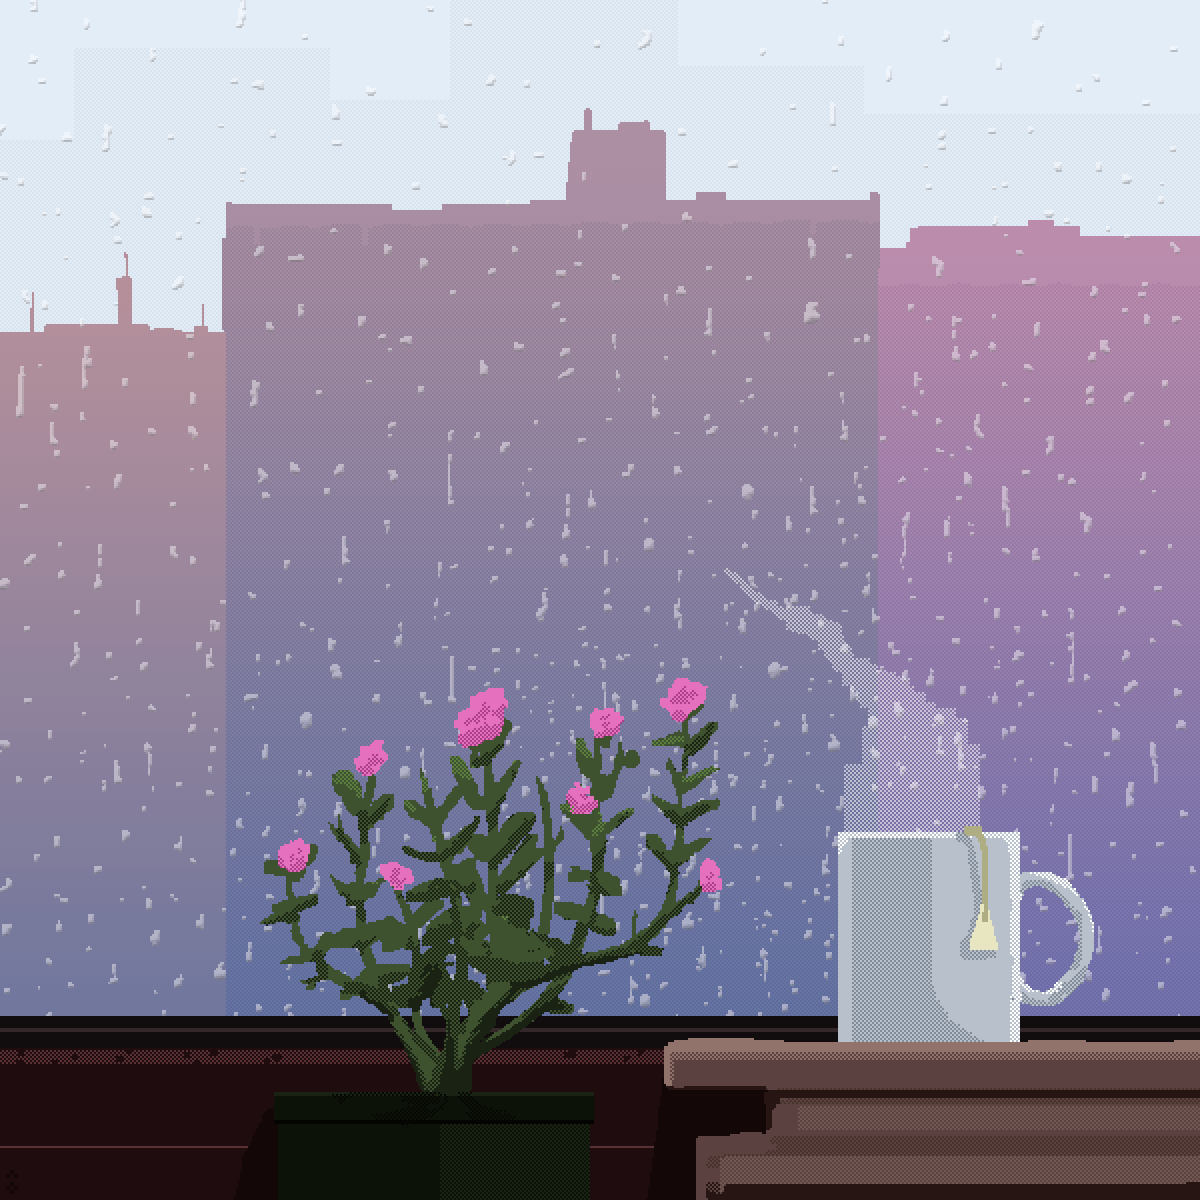 [OC] Rainy afternoon : PixelArt